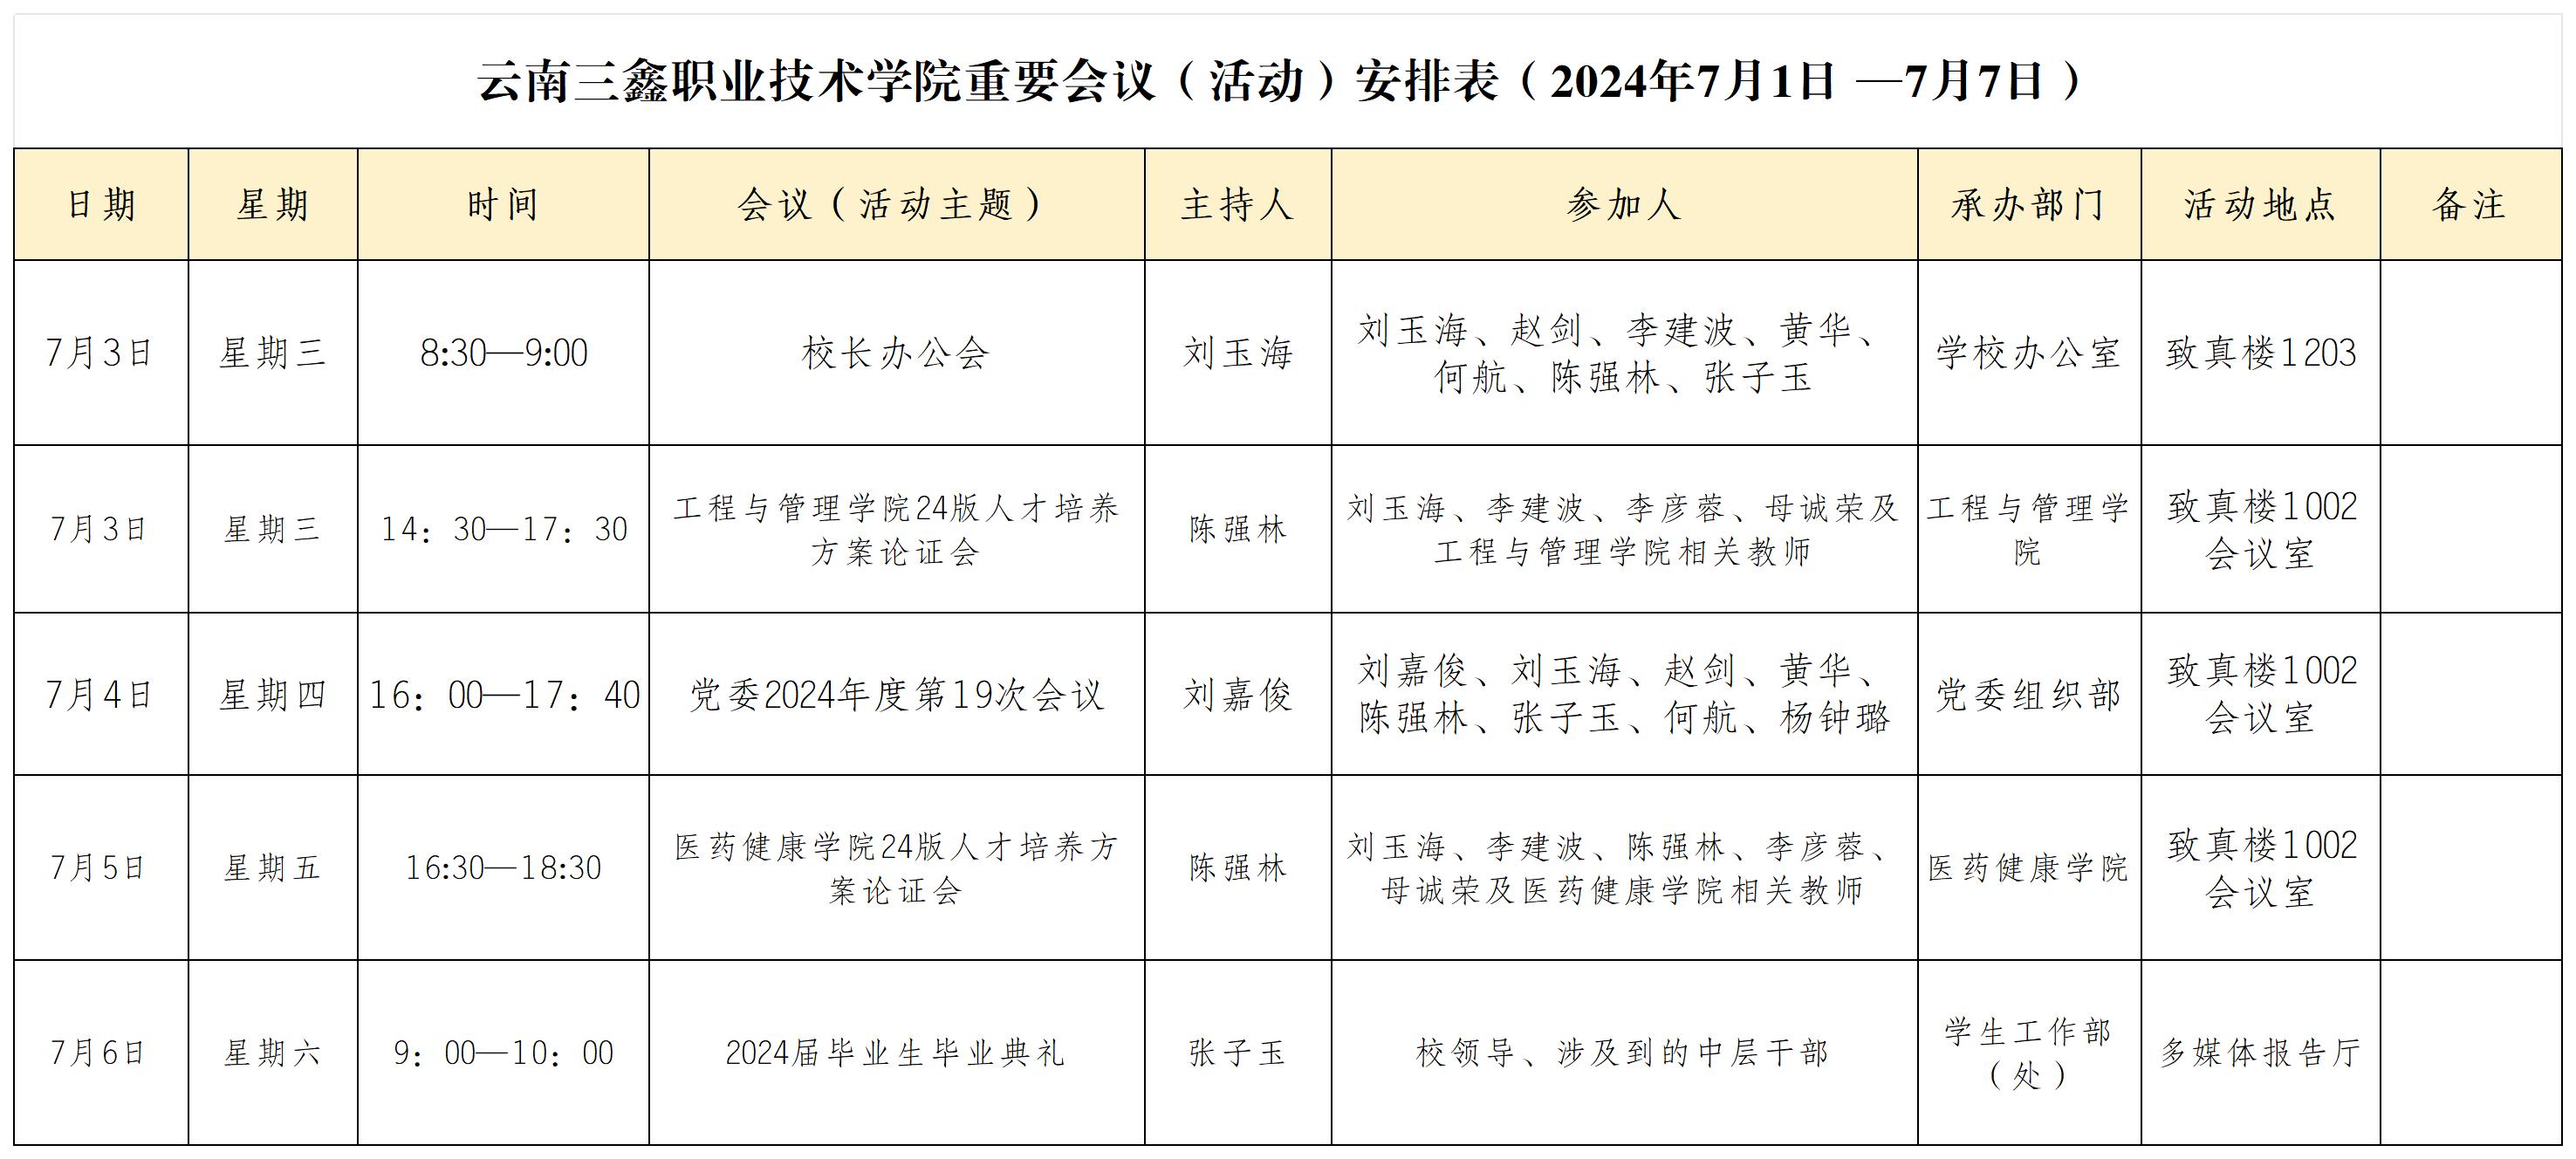 云南三鑫职业技术学院重要会议（活动）安排表（2024年7月1日 —7月7日）